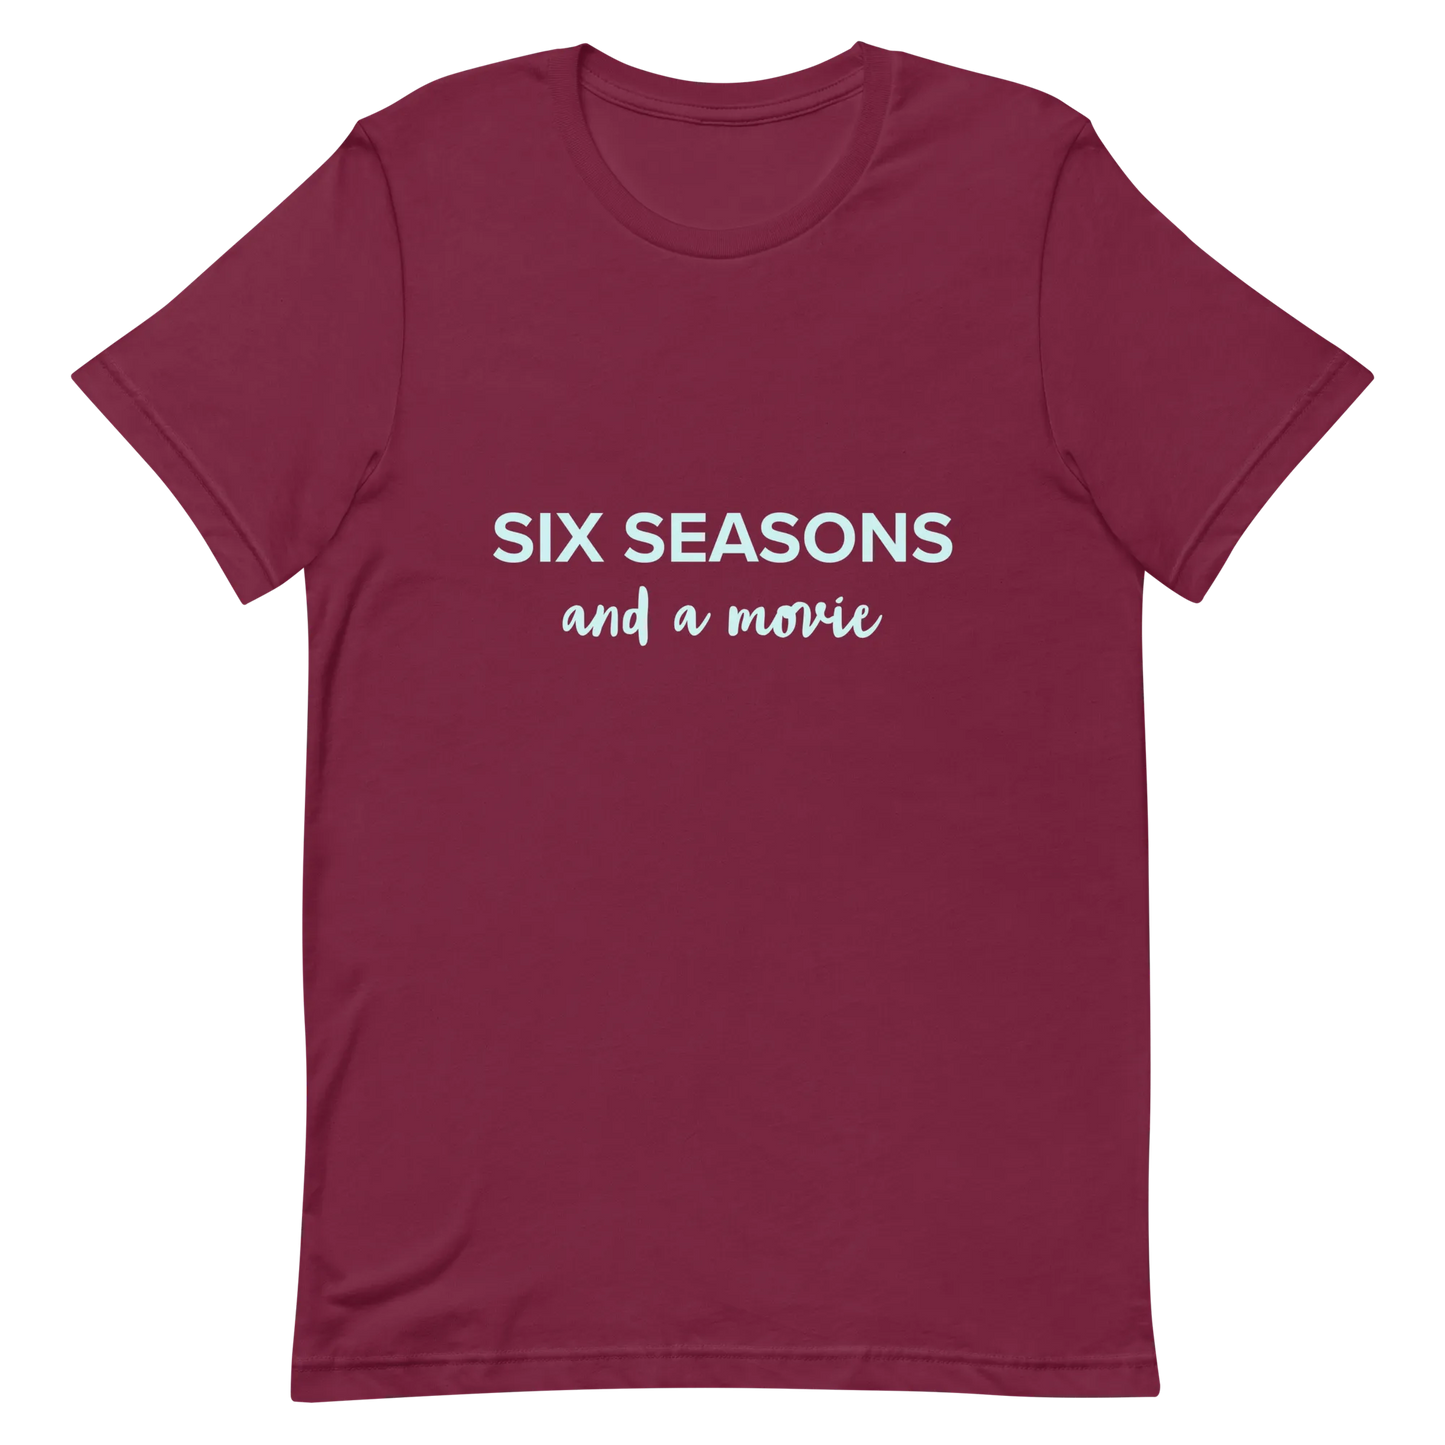 Six Seasons and a Movie Tee in Maroon flatlay